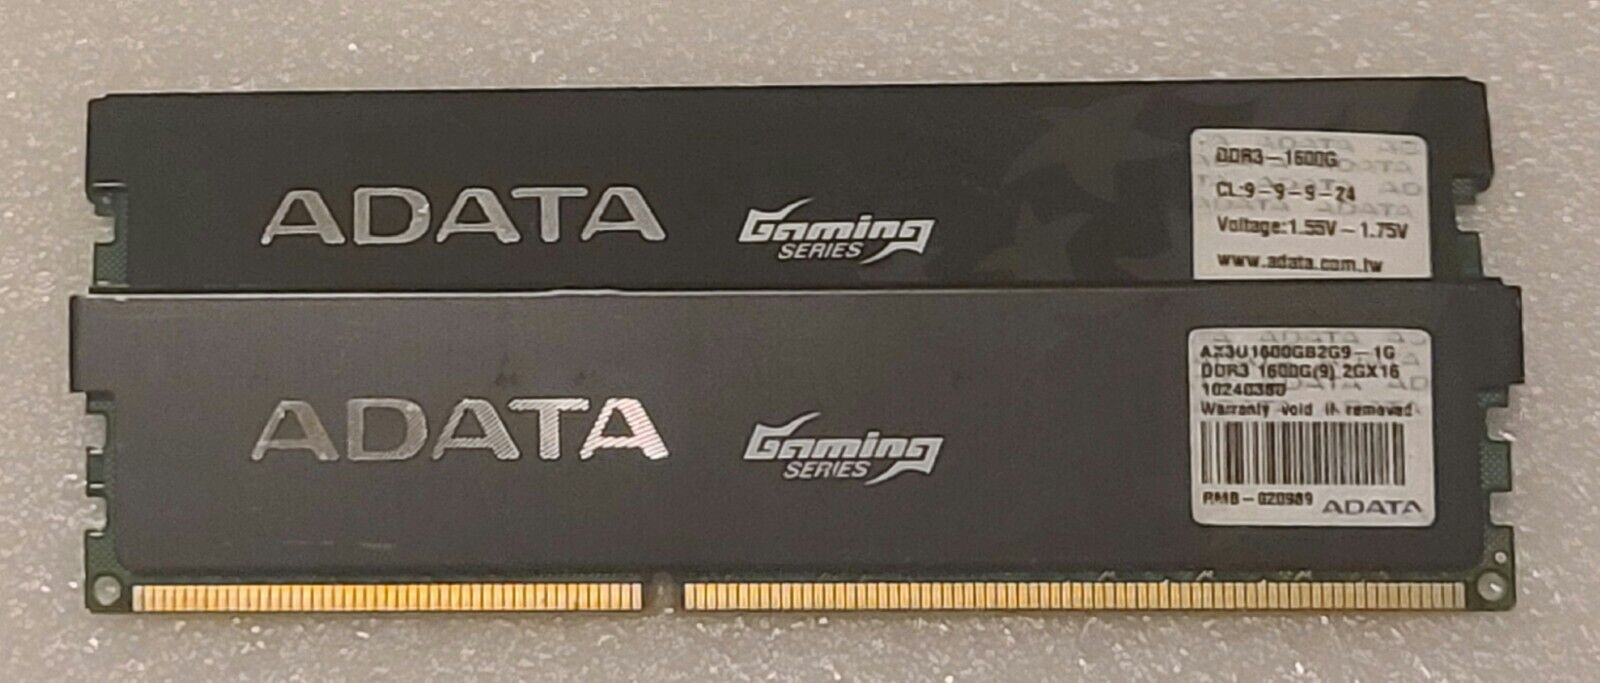 DDR3-1600 2GB (2x1GB) Desktop Memory ADATA AX3U1600GB2G9-1G